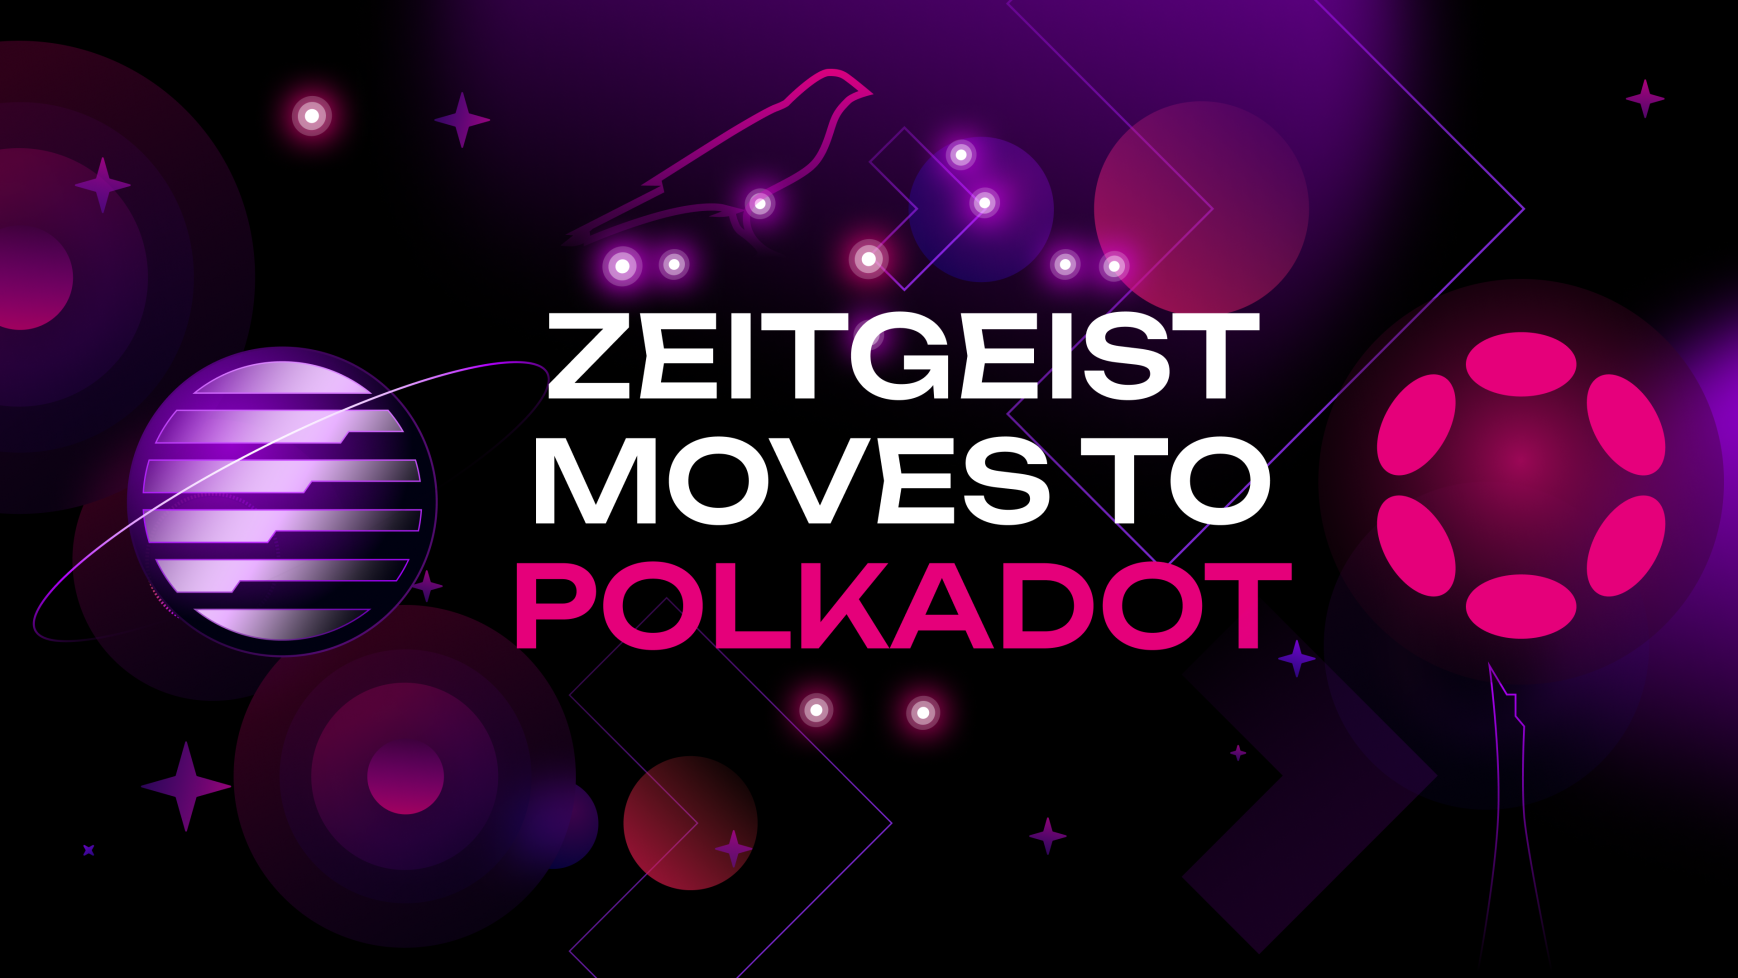 Zeitgeist Is Moving To Polkadot!